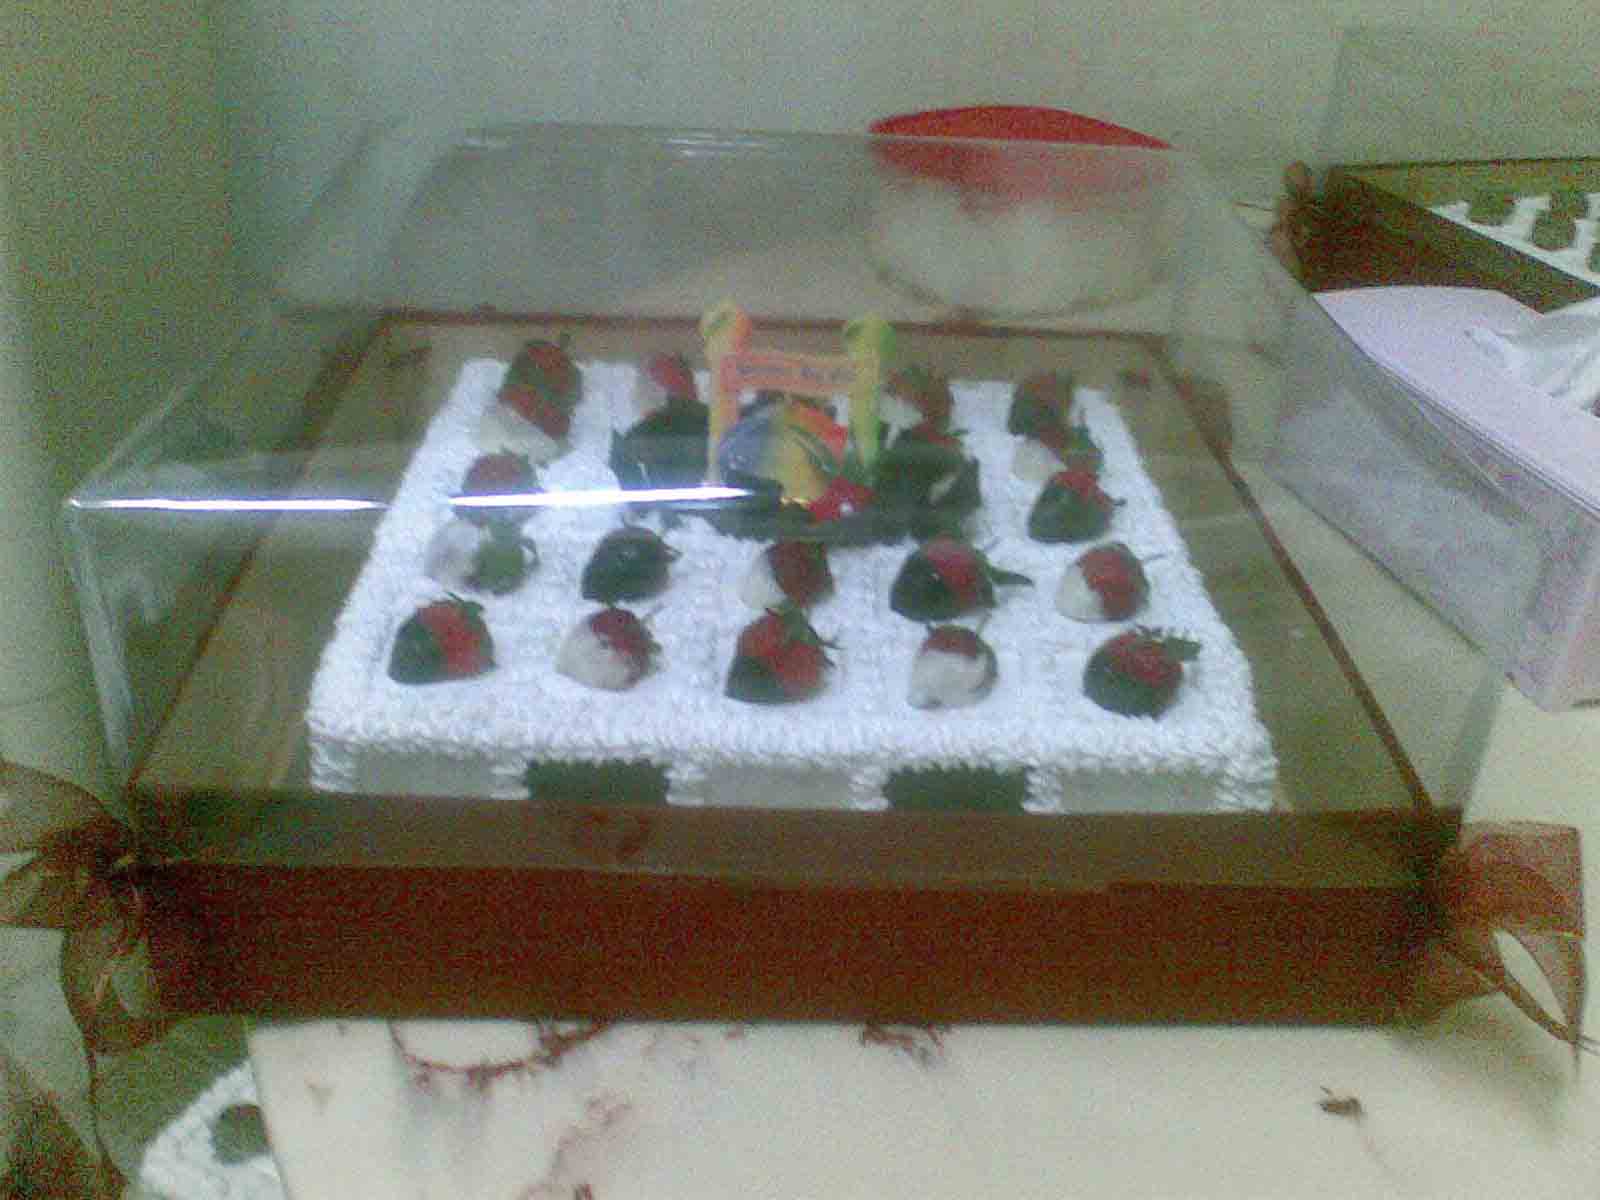 [Strawberry+Choc+Cake+&+Box.jpg]